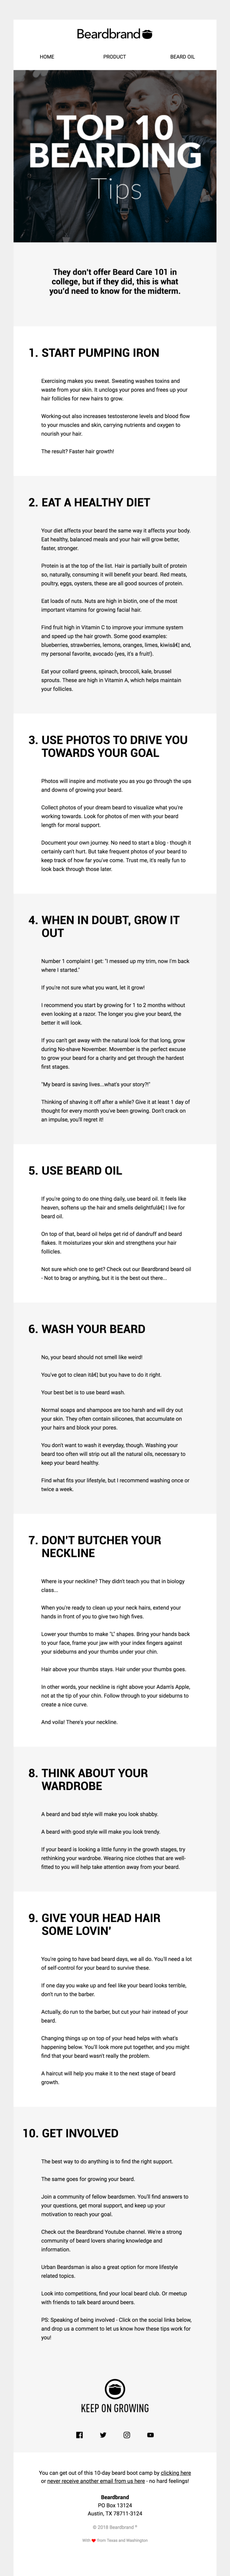 beardbrand newsletter